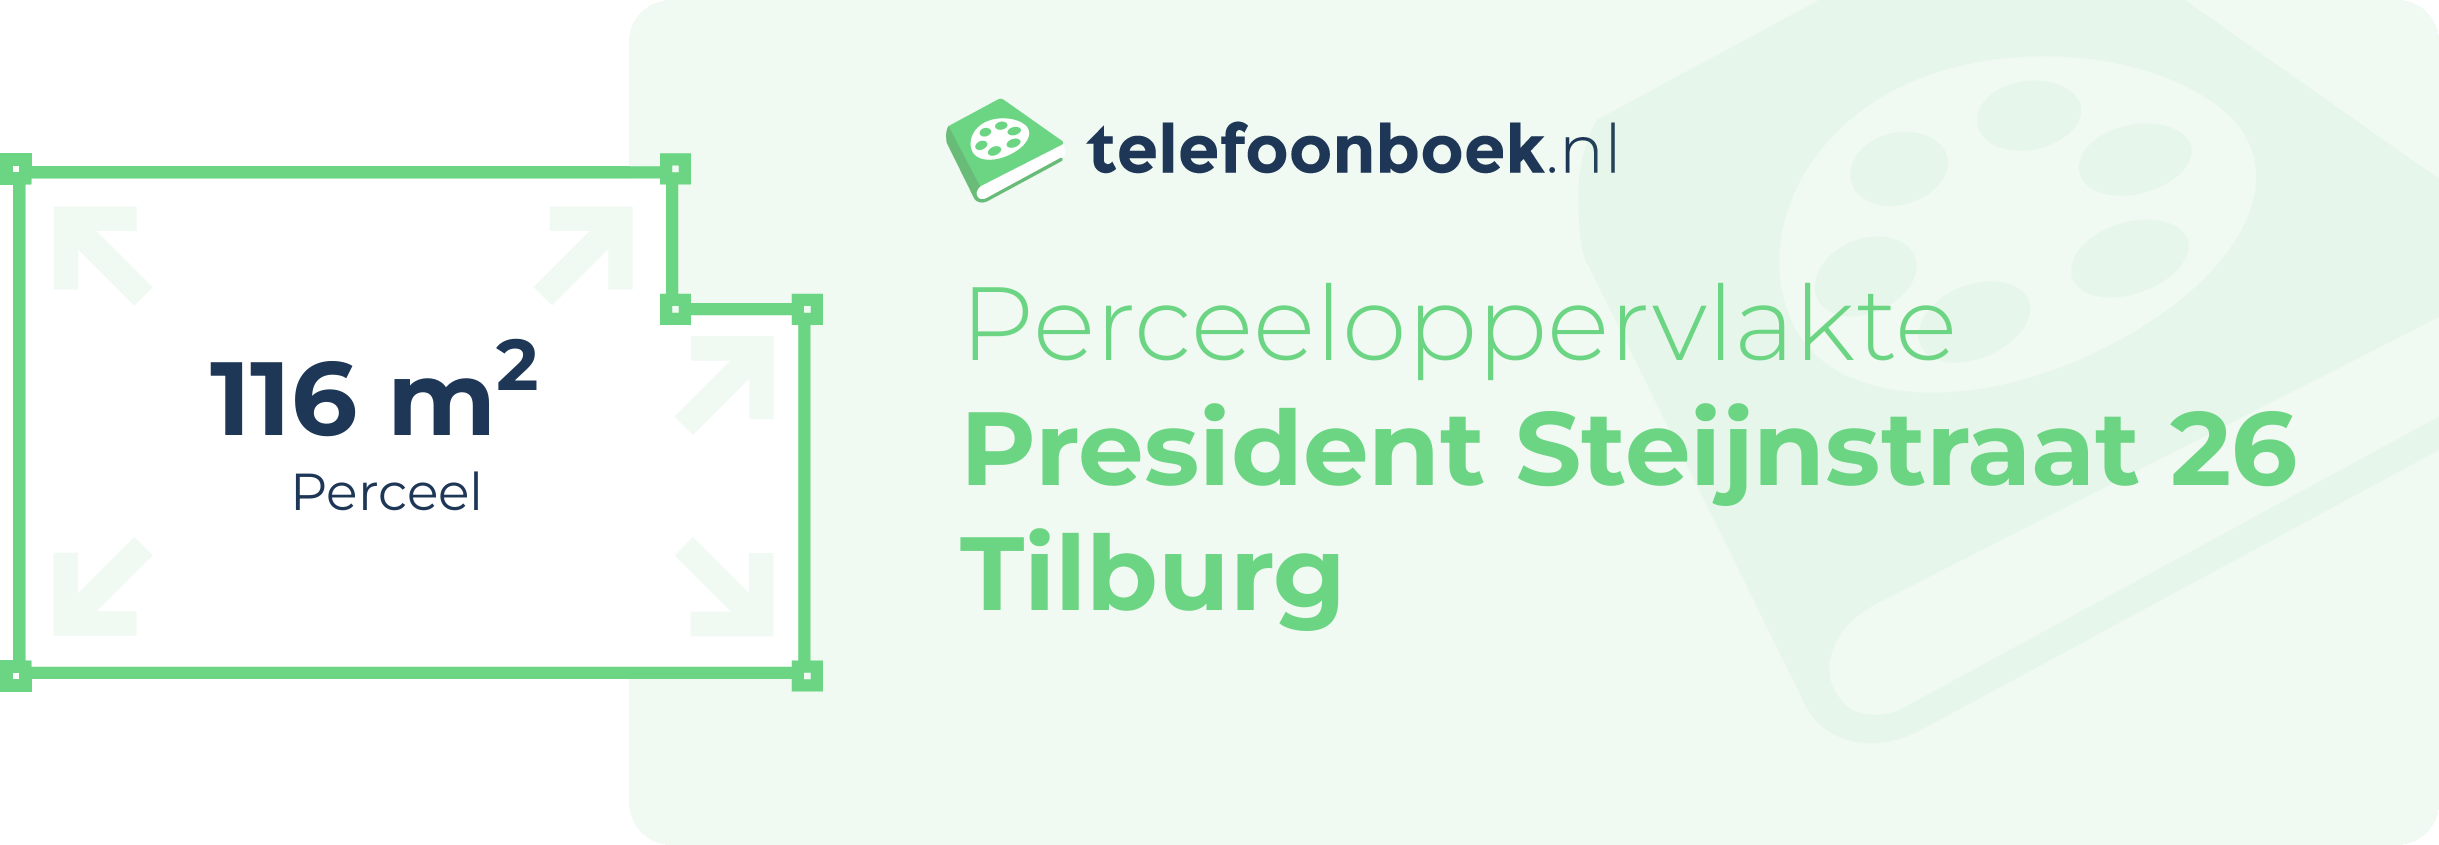 Perceeloppervlakte President Steijnstraat 26 Tilburg